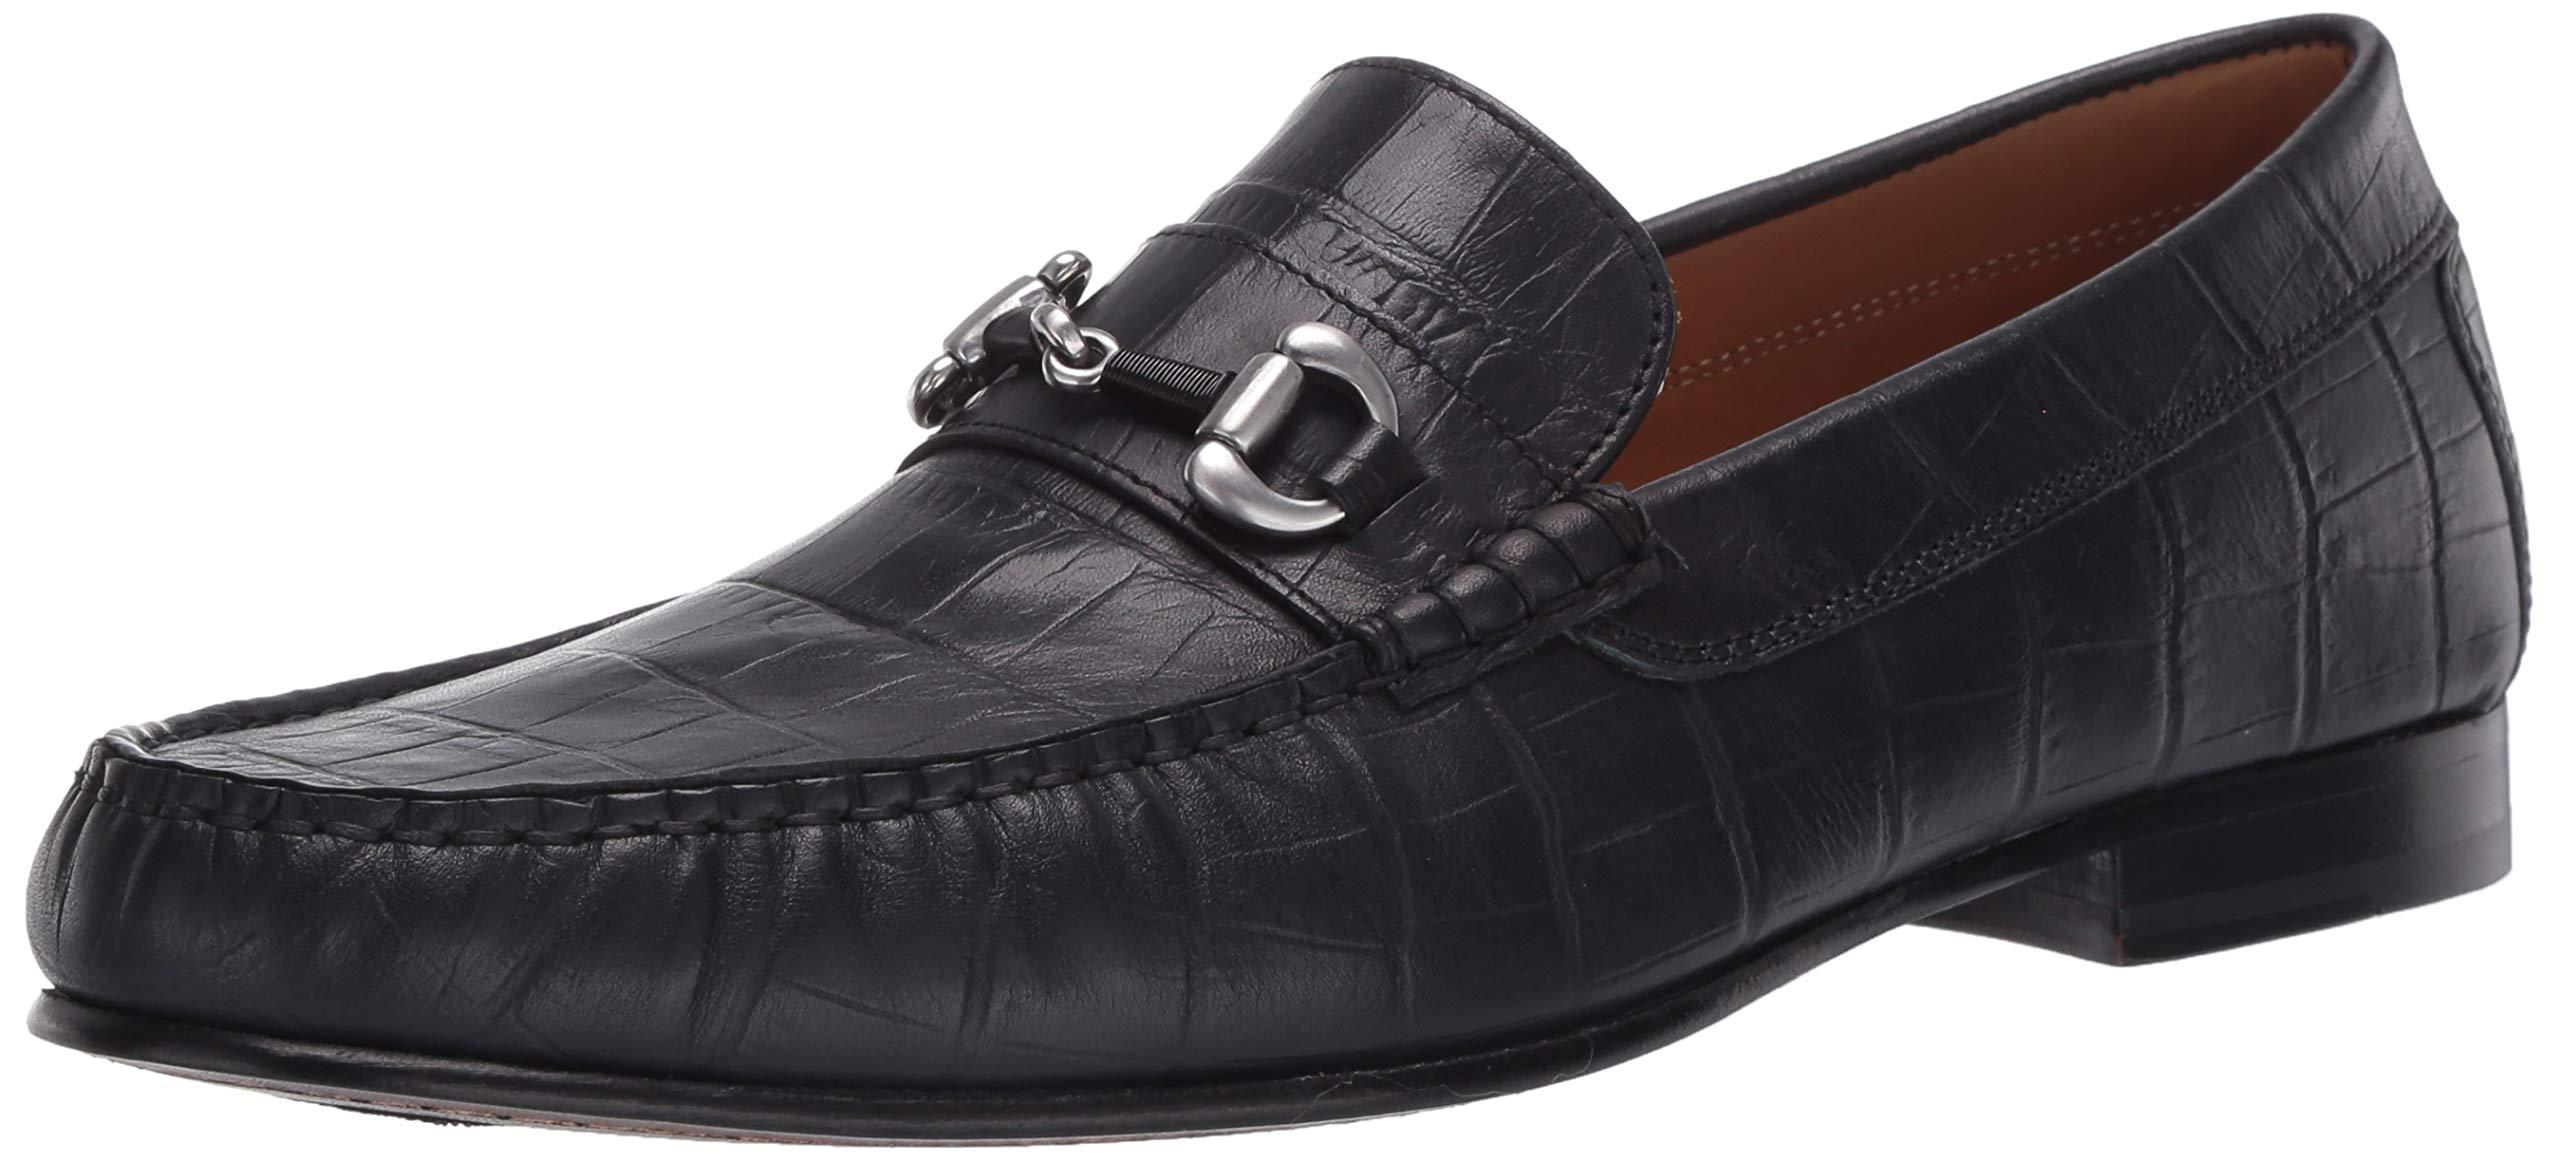 Donald J Pliner Leather Mens Loafer in Black for Men - Lyst